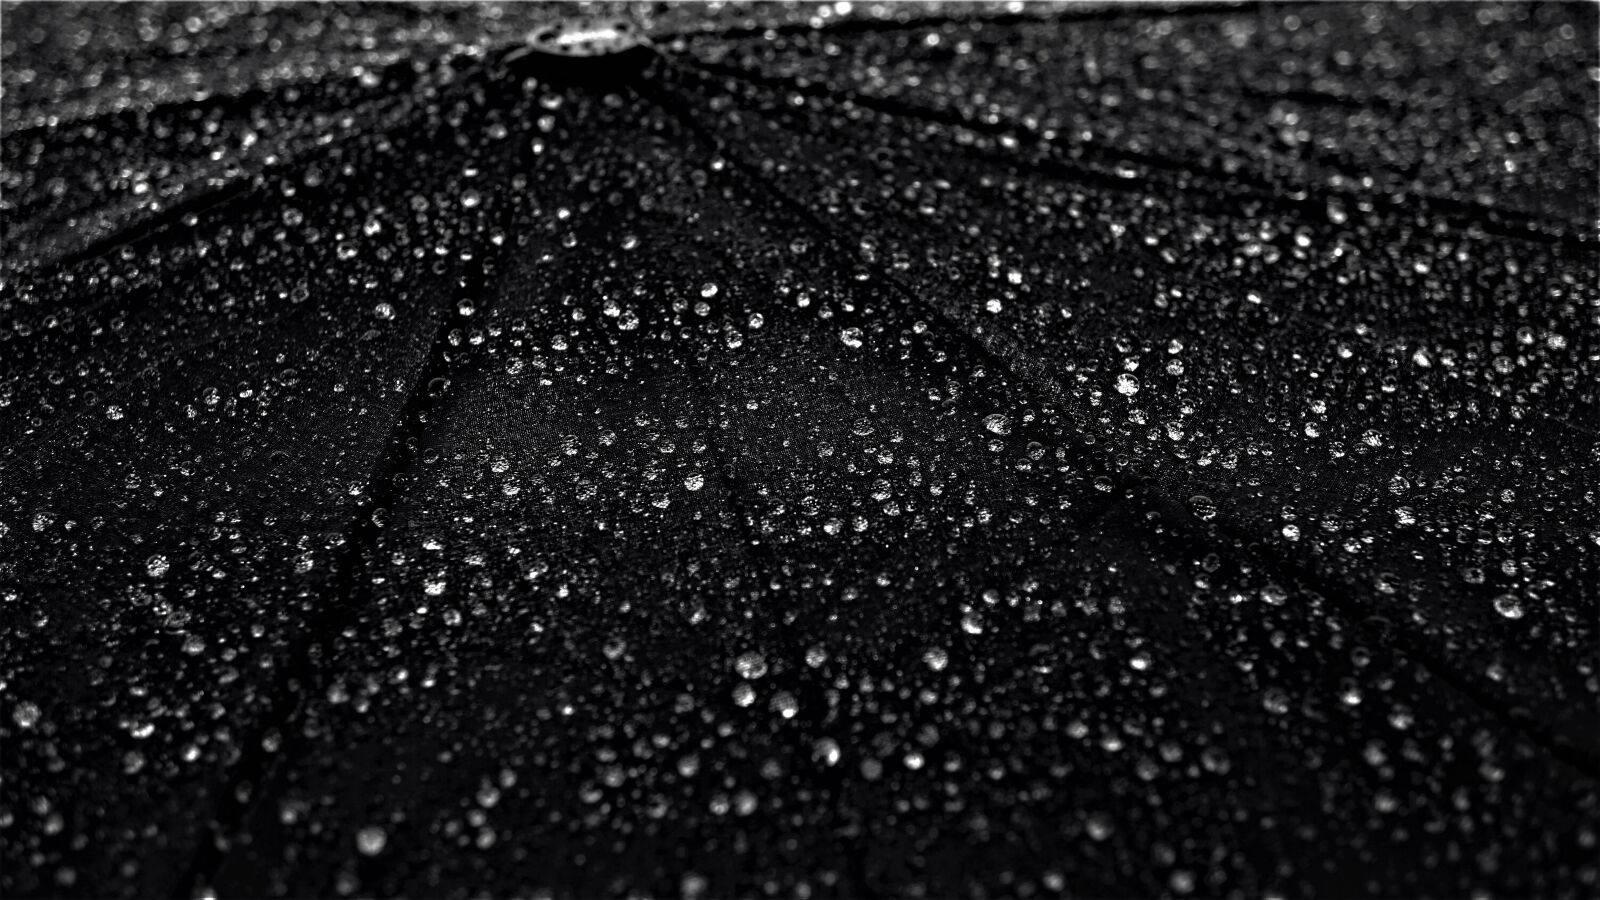 Sony a6000 + Sony E 30mm F3.5 Macro sample photo. Umbrella, background, rain photography